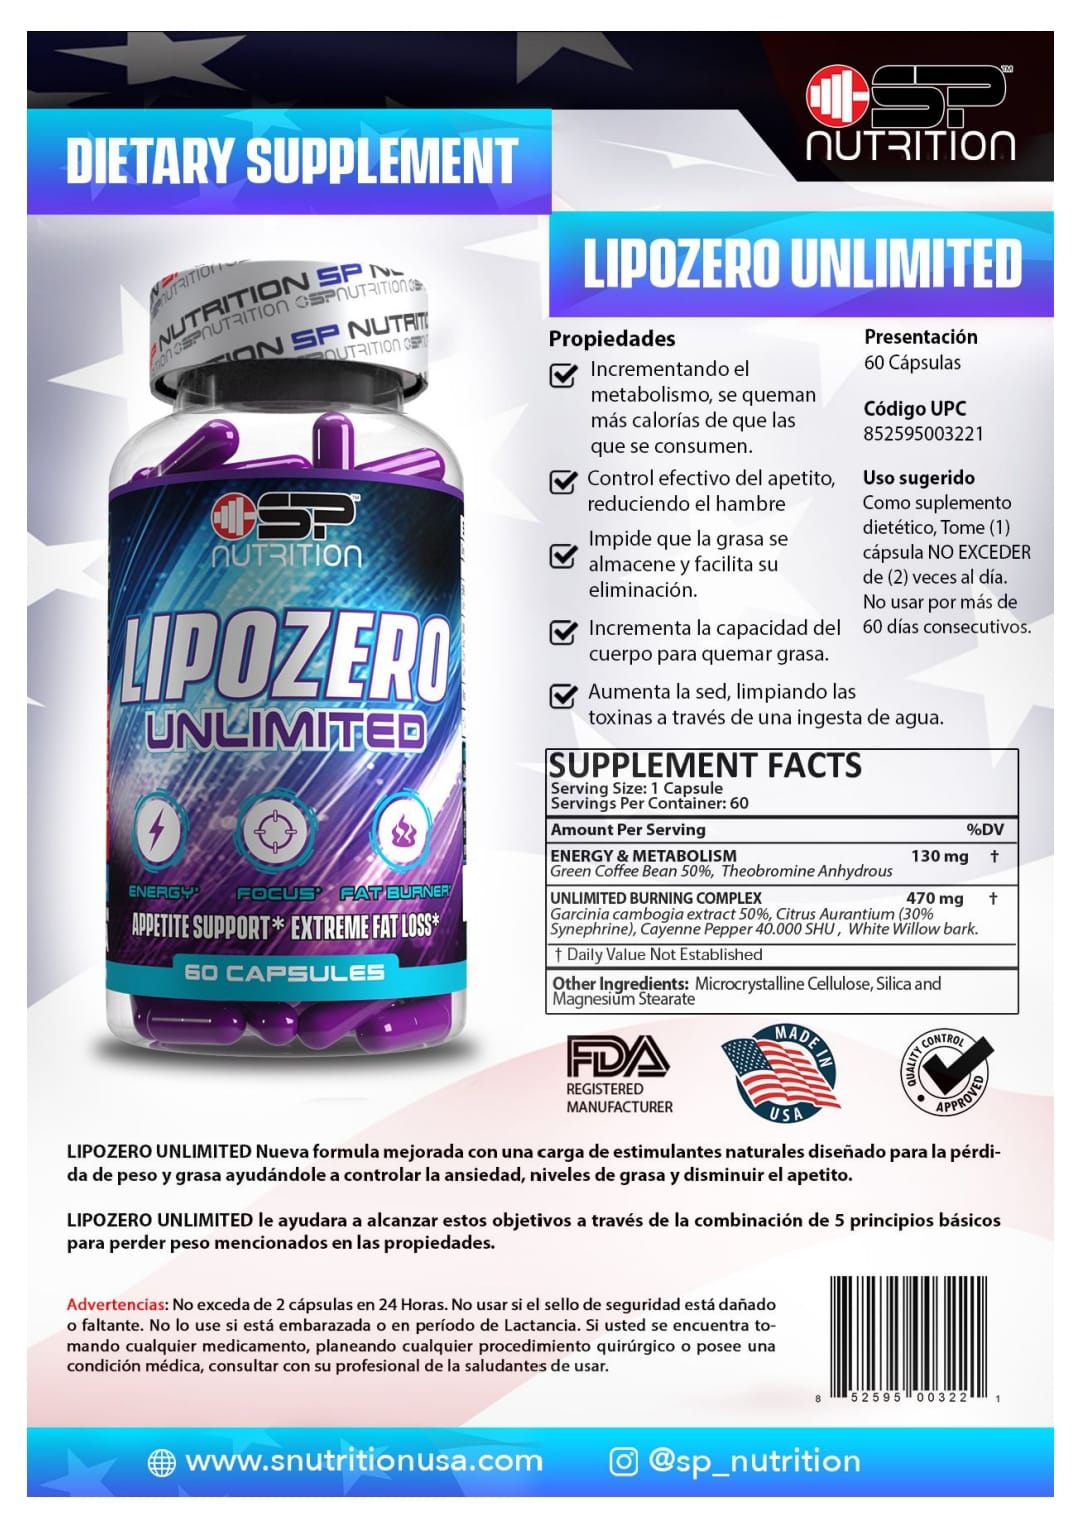 Lipozero Unlimited